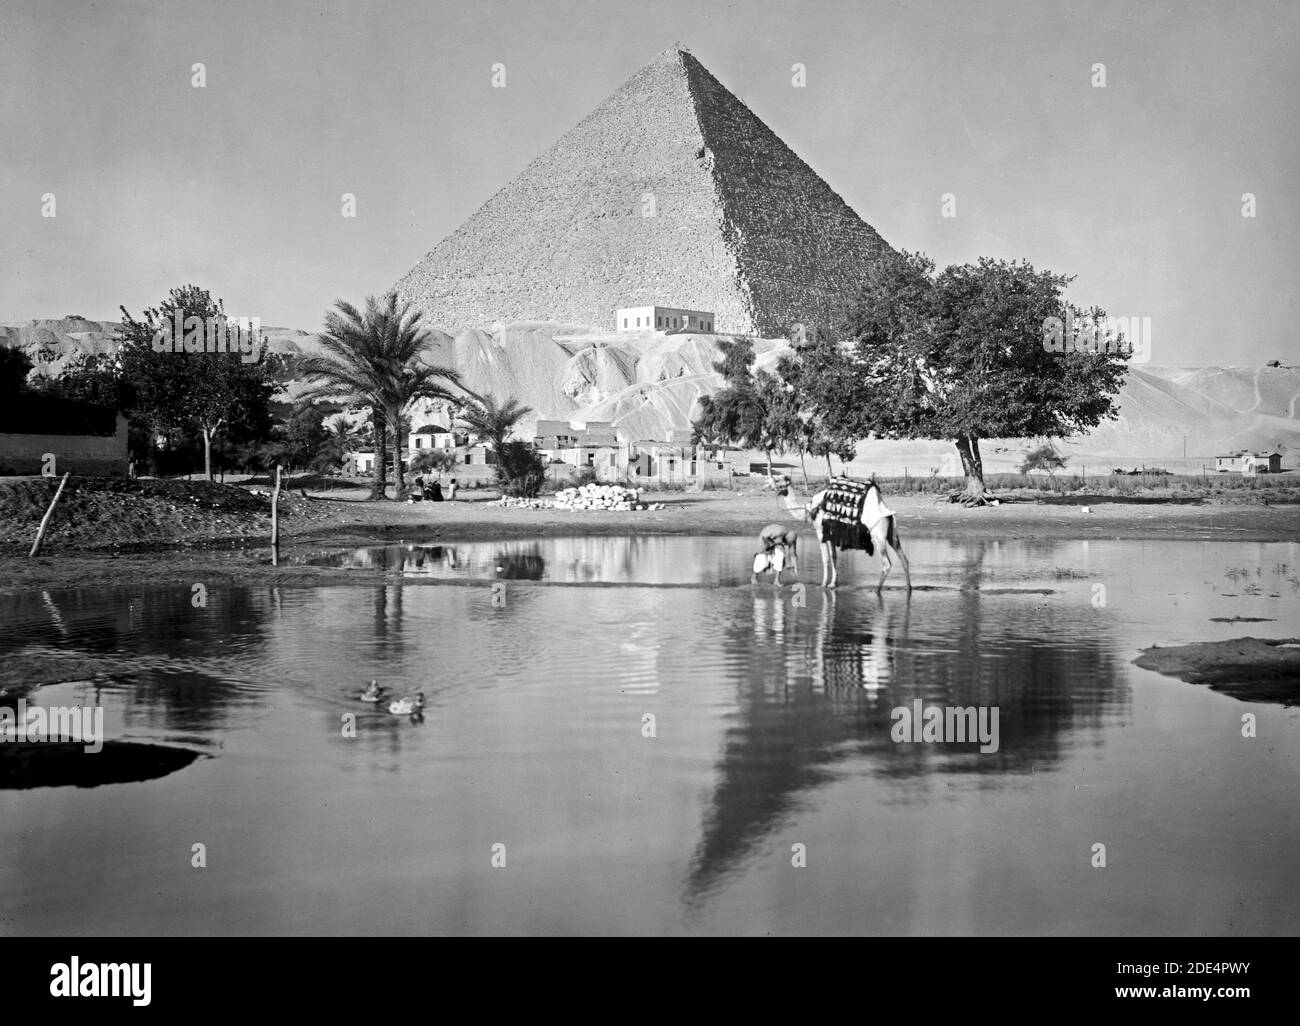 Originalunterschrift: Ägypten. Pyramiden von Gizeh. Die Große Pyramide. Reflektierende Pyramide & montierter Kamelmann - Ort: Ägypten--Jizah Ca. 1934-1939 Stockfoto